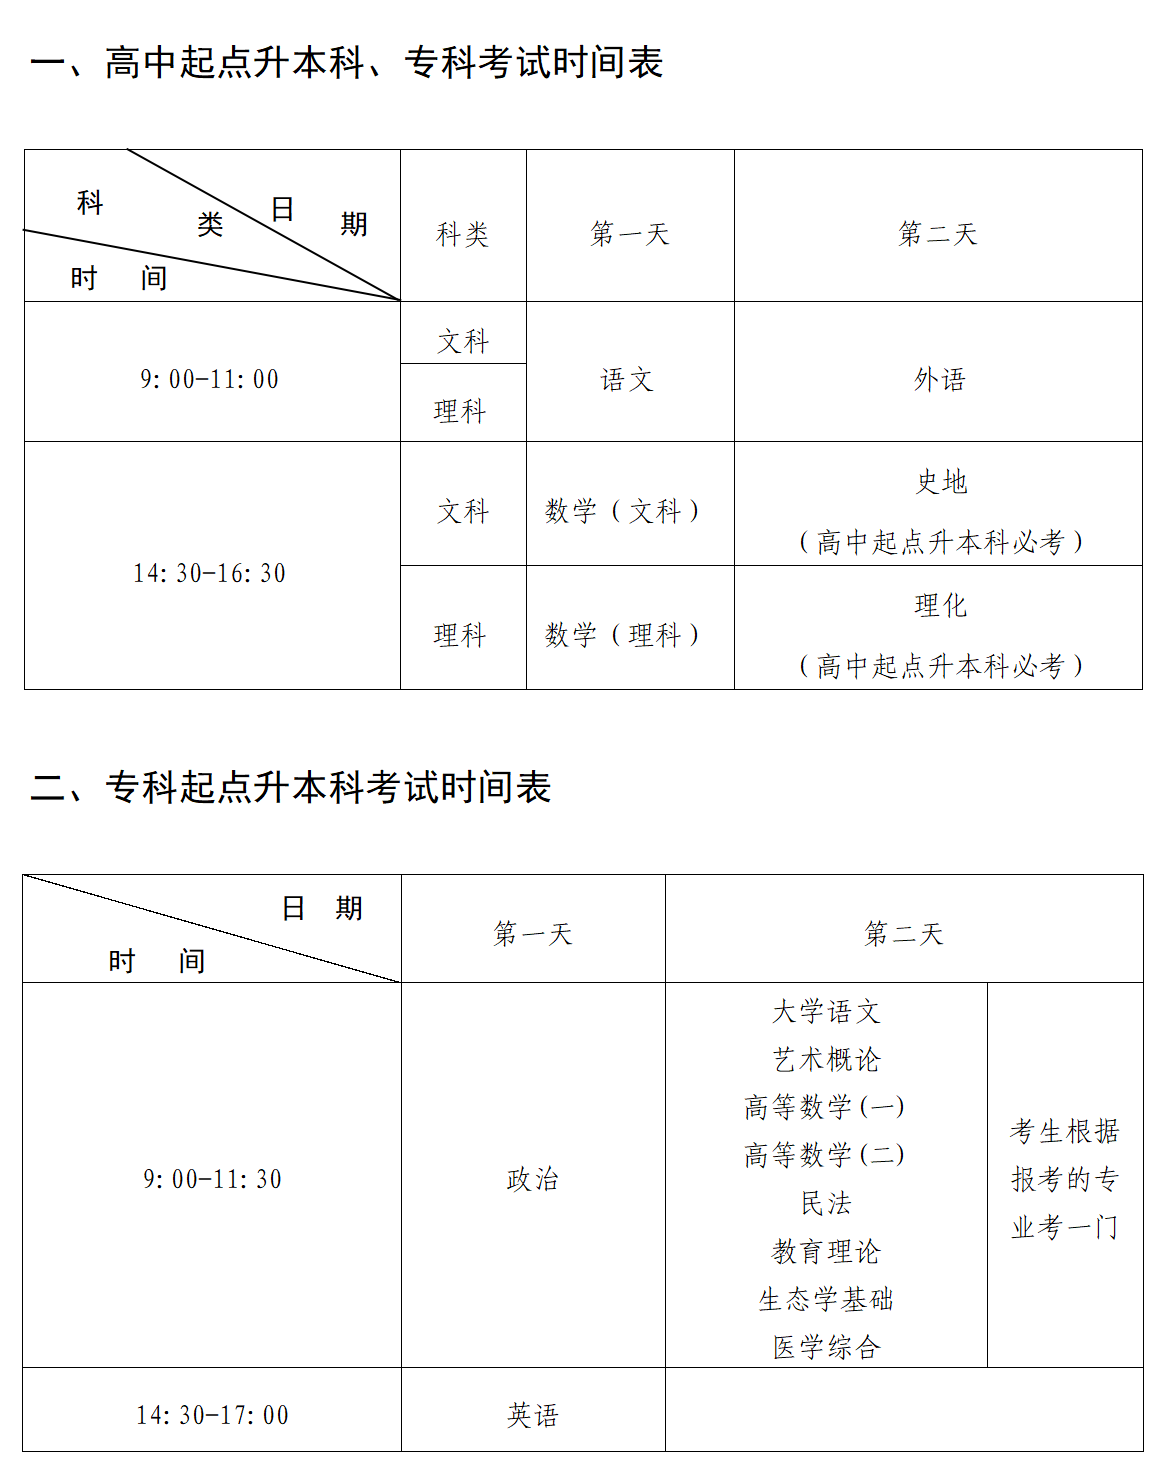 2022年上海成人高考考试安排